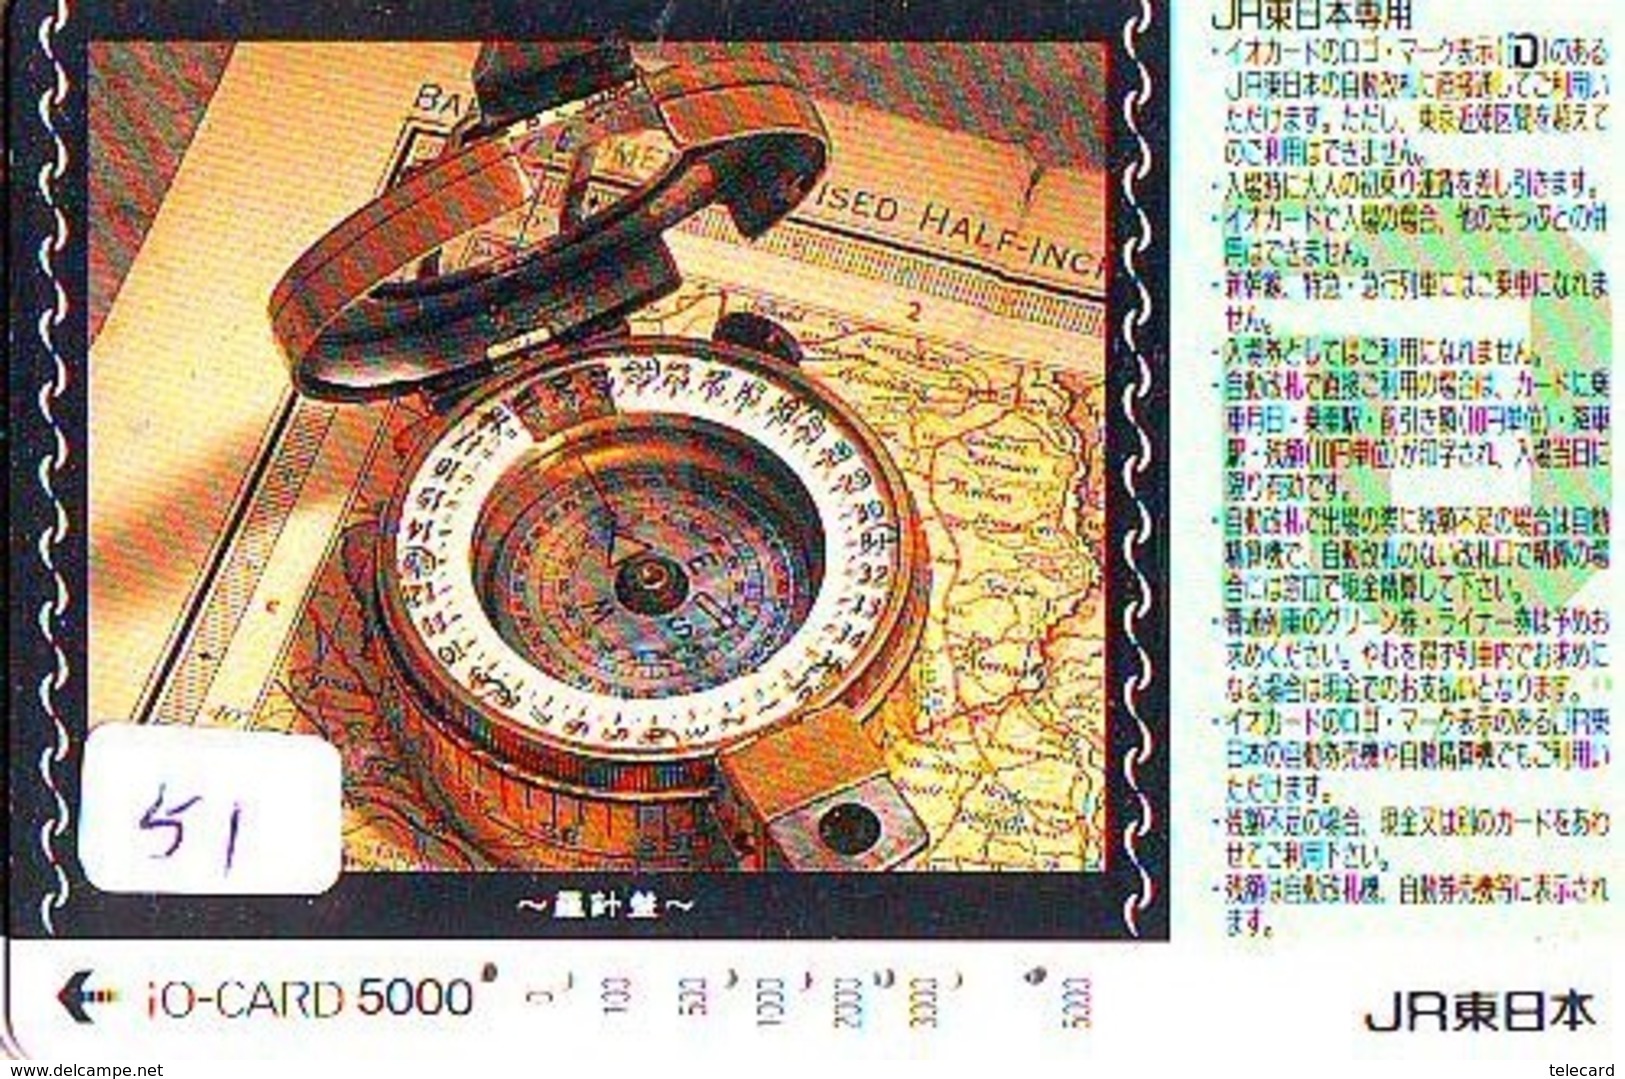 Compass Boussole Kompaß Kompas Sur Carte JAPAN (51) East West South North - Astronomie